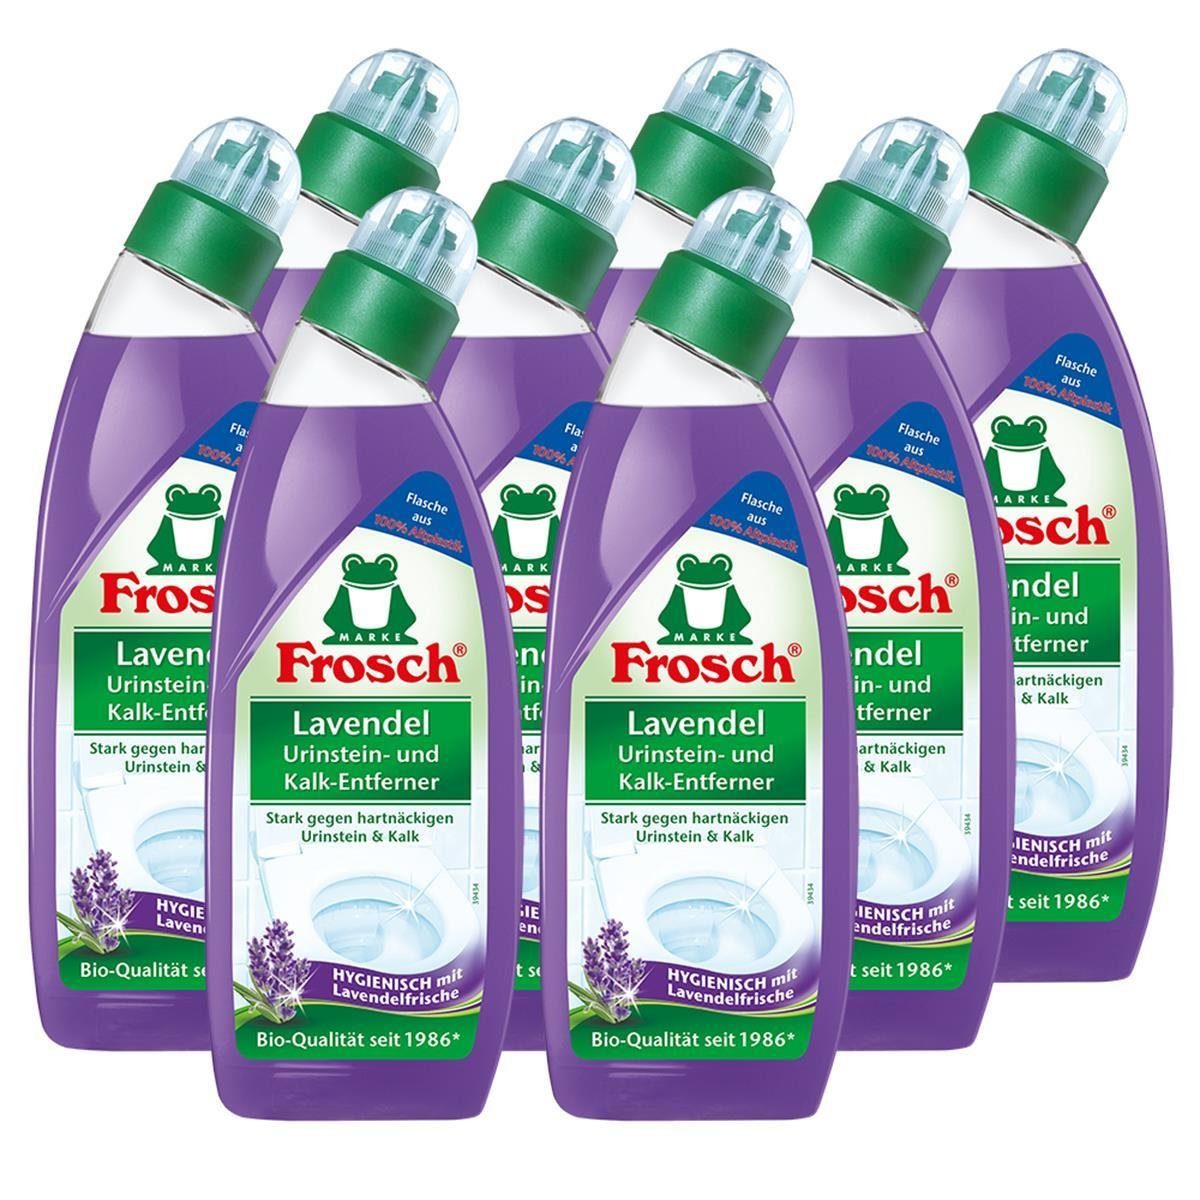 FROSCH 8x Frosch Lavendel Urinstein- und Kalk-Entferner 750 ml - Hygienisch m WC-Reiniger